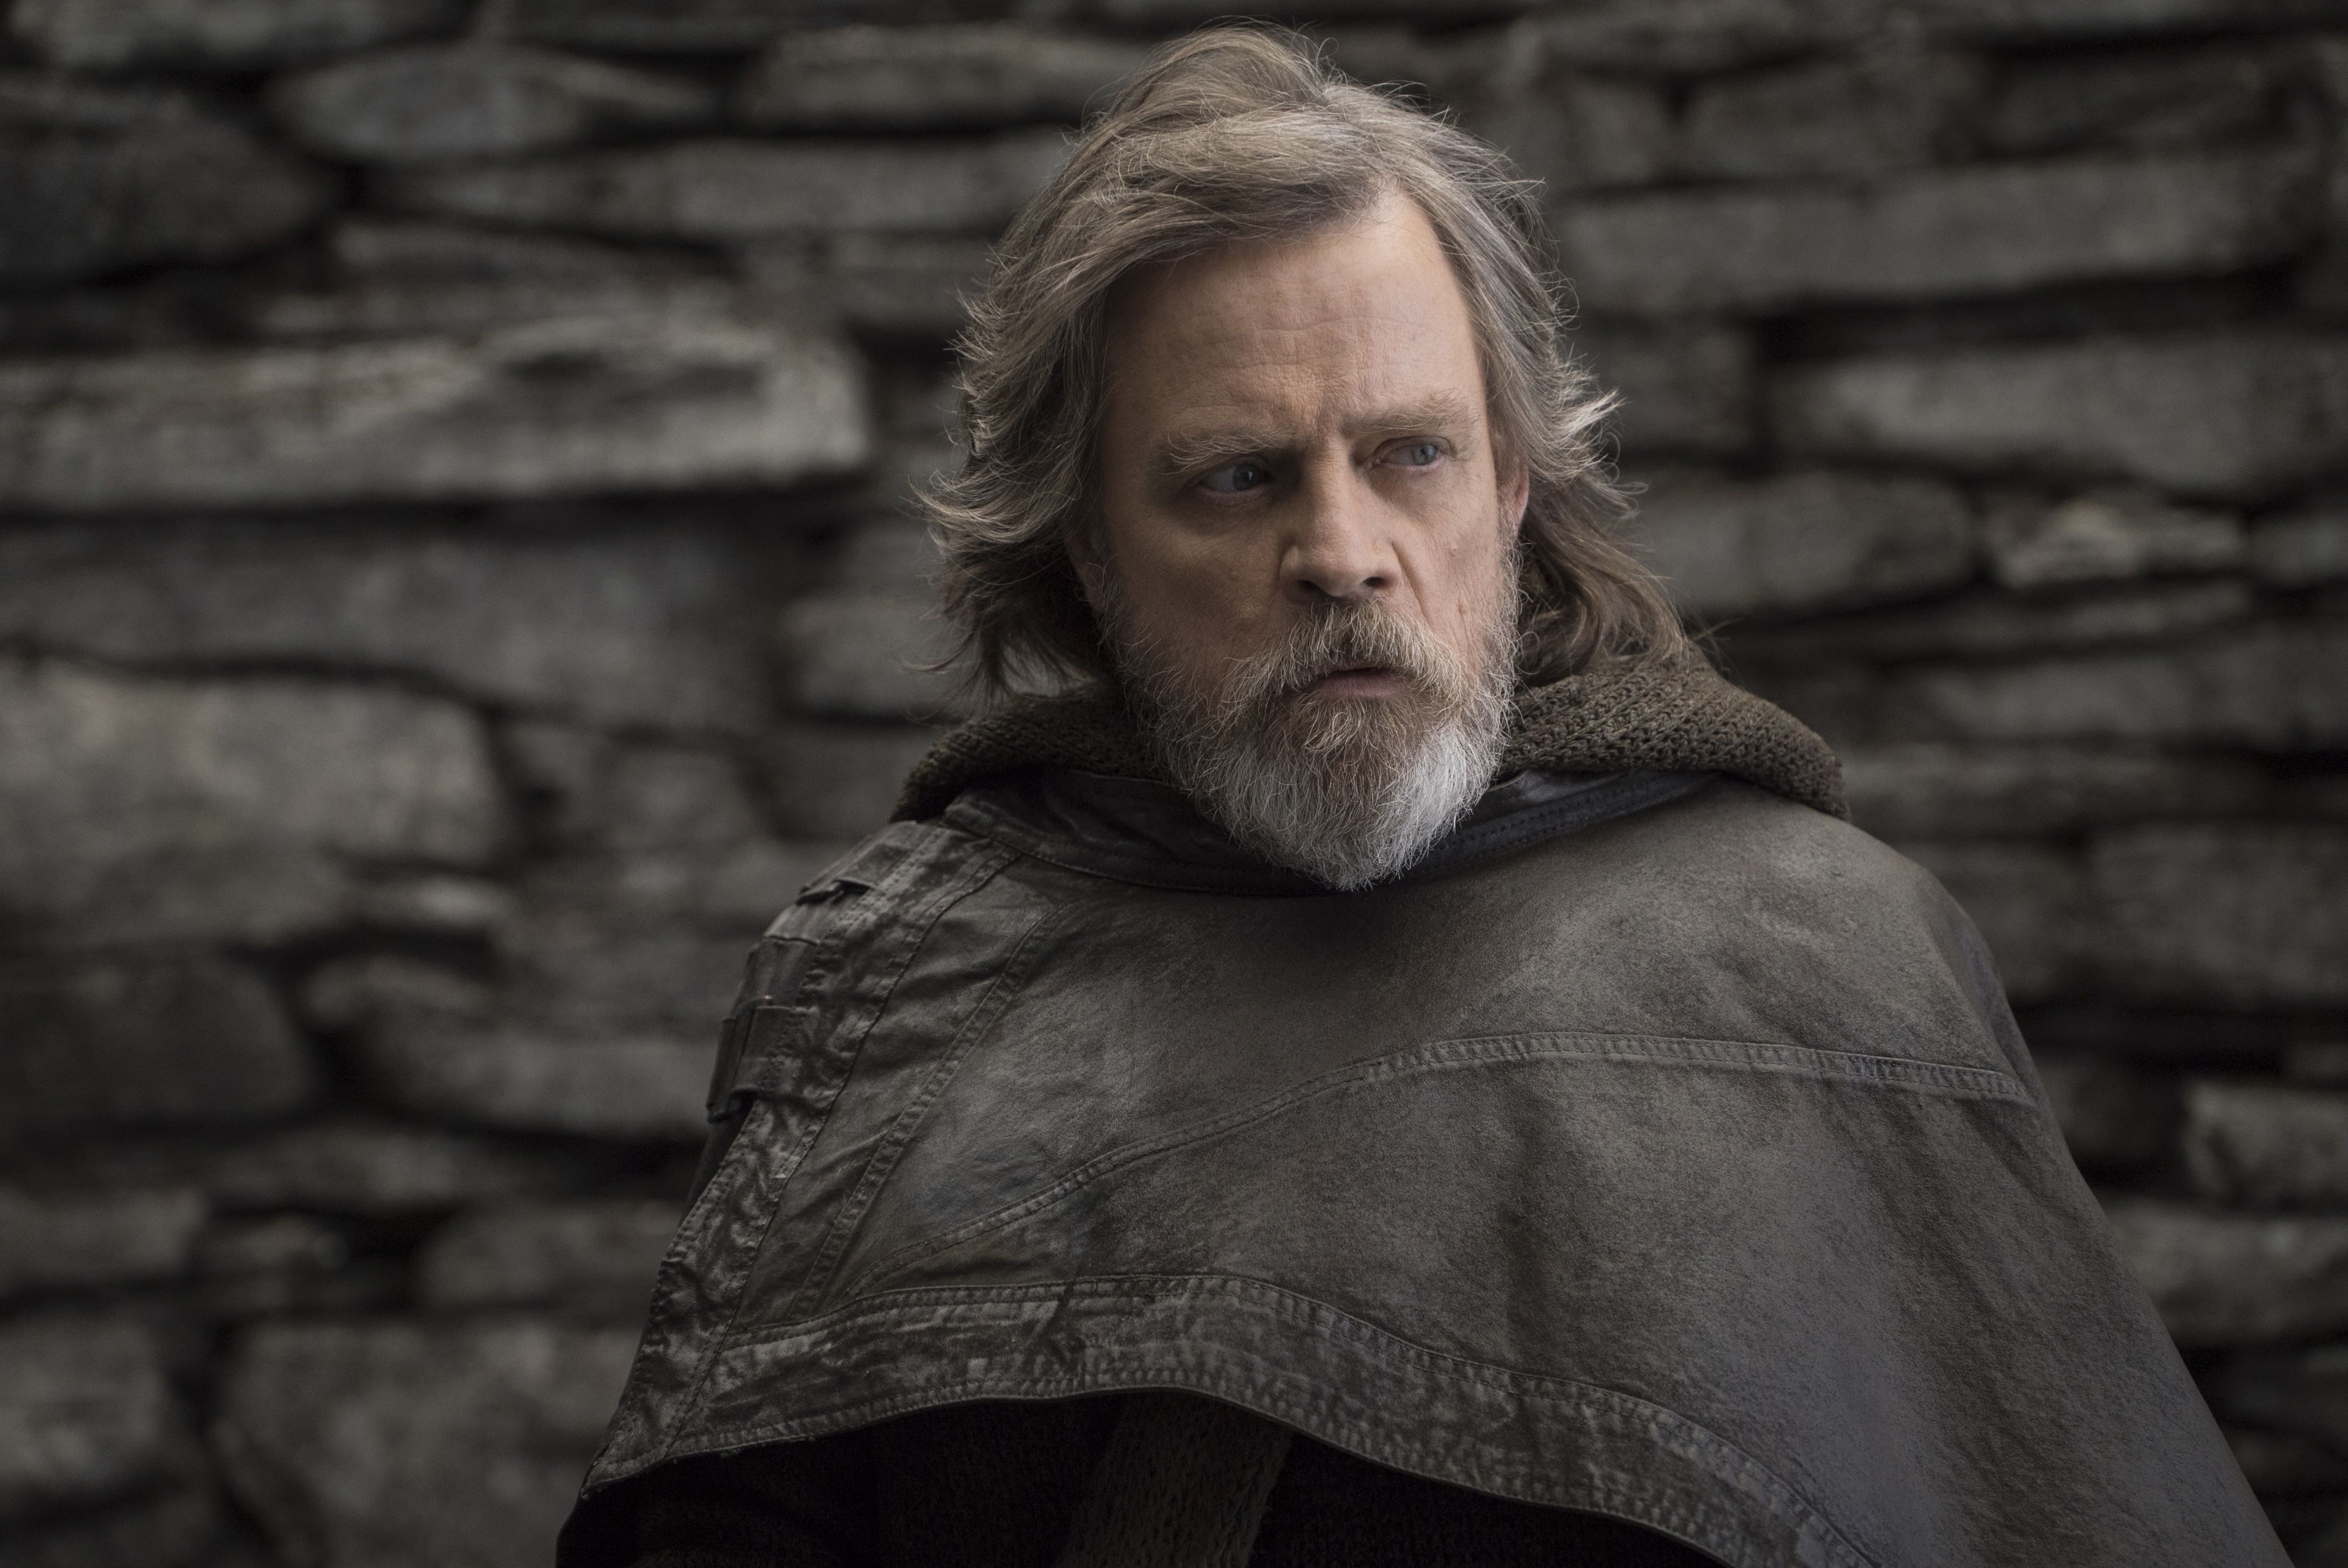 Luke Skywalker as he appears in Star Wars.